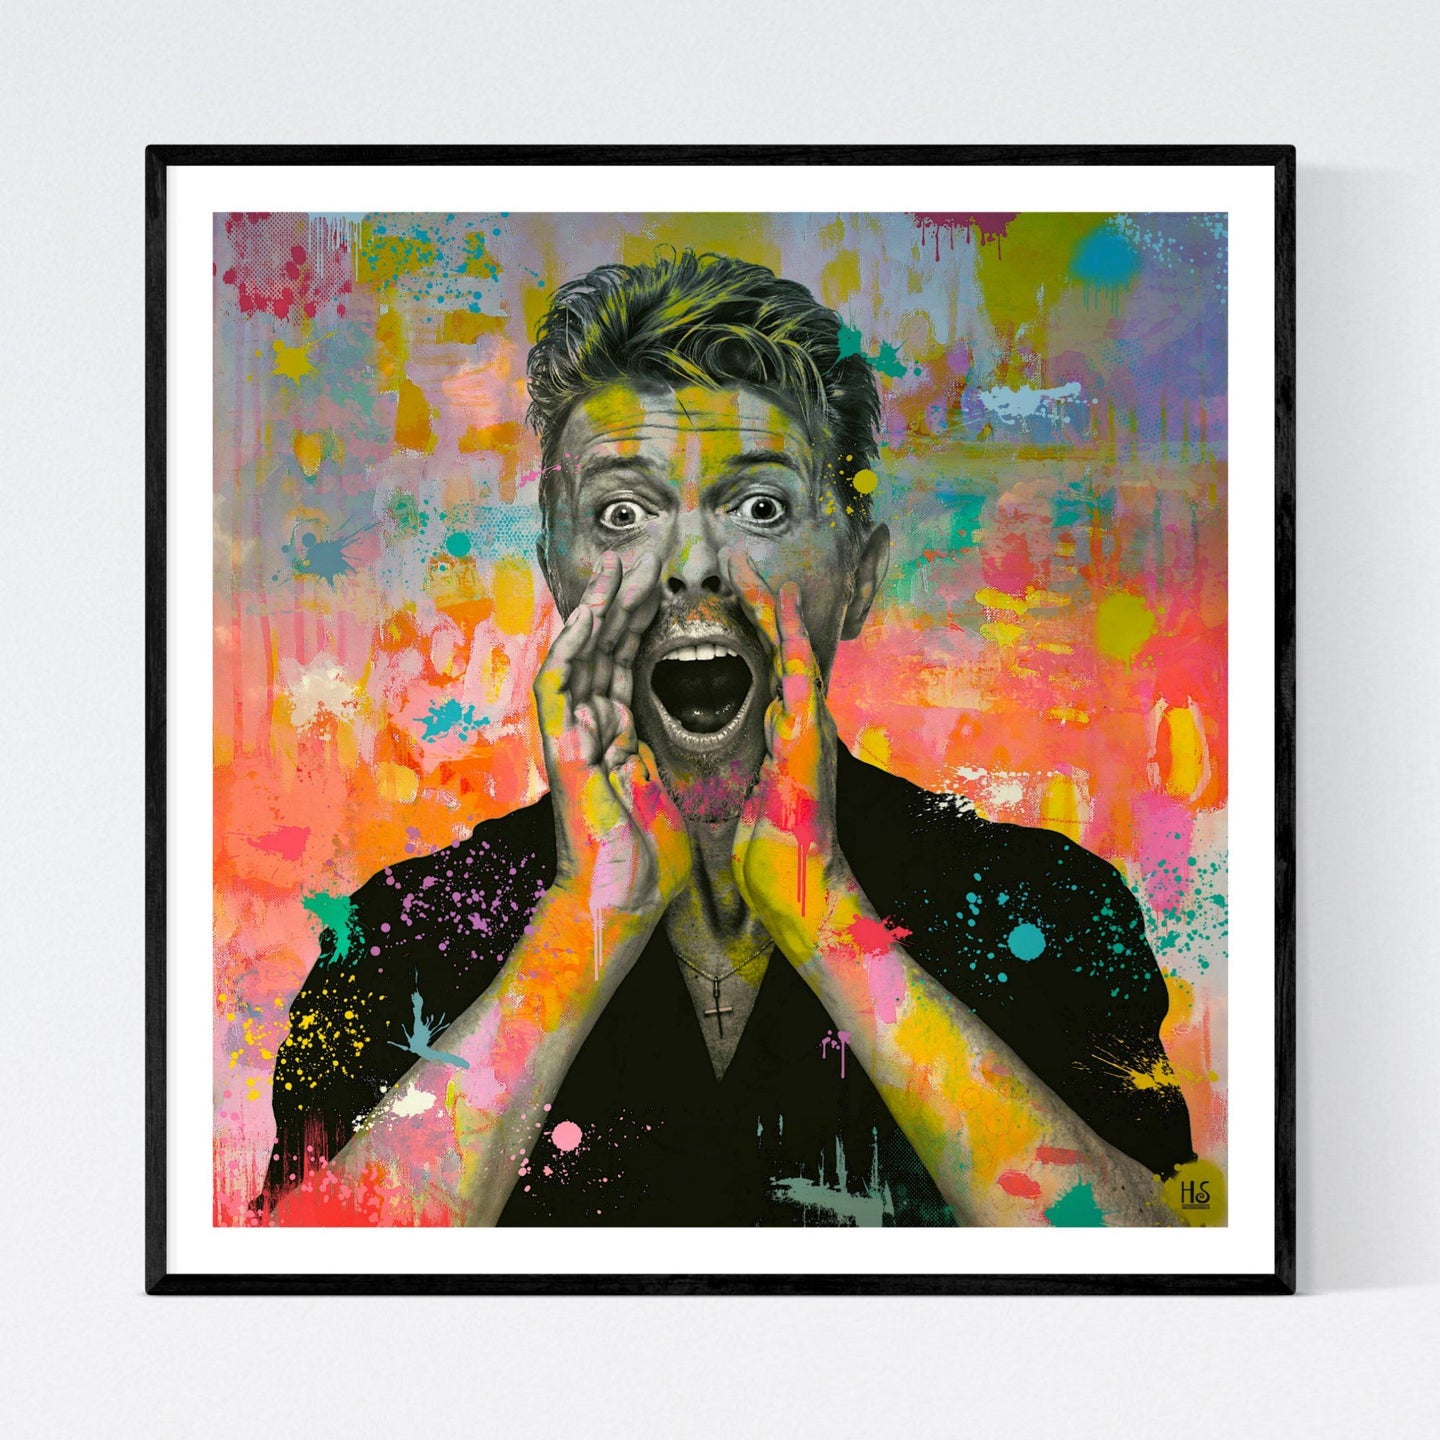 Let's Dance - pop art kunstportræt, der viser en råbende David Bowie i sort/hvid på en kulørfyldt abstrakt baggrund, ligesom der er farveklatter på selve portrættet - af billedkunstner og pop artist Helt Sort